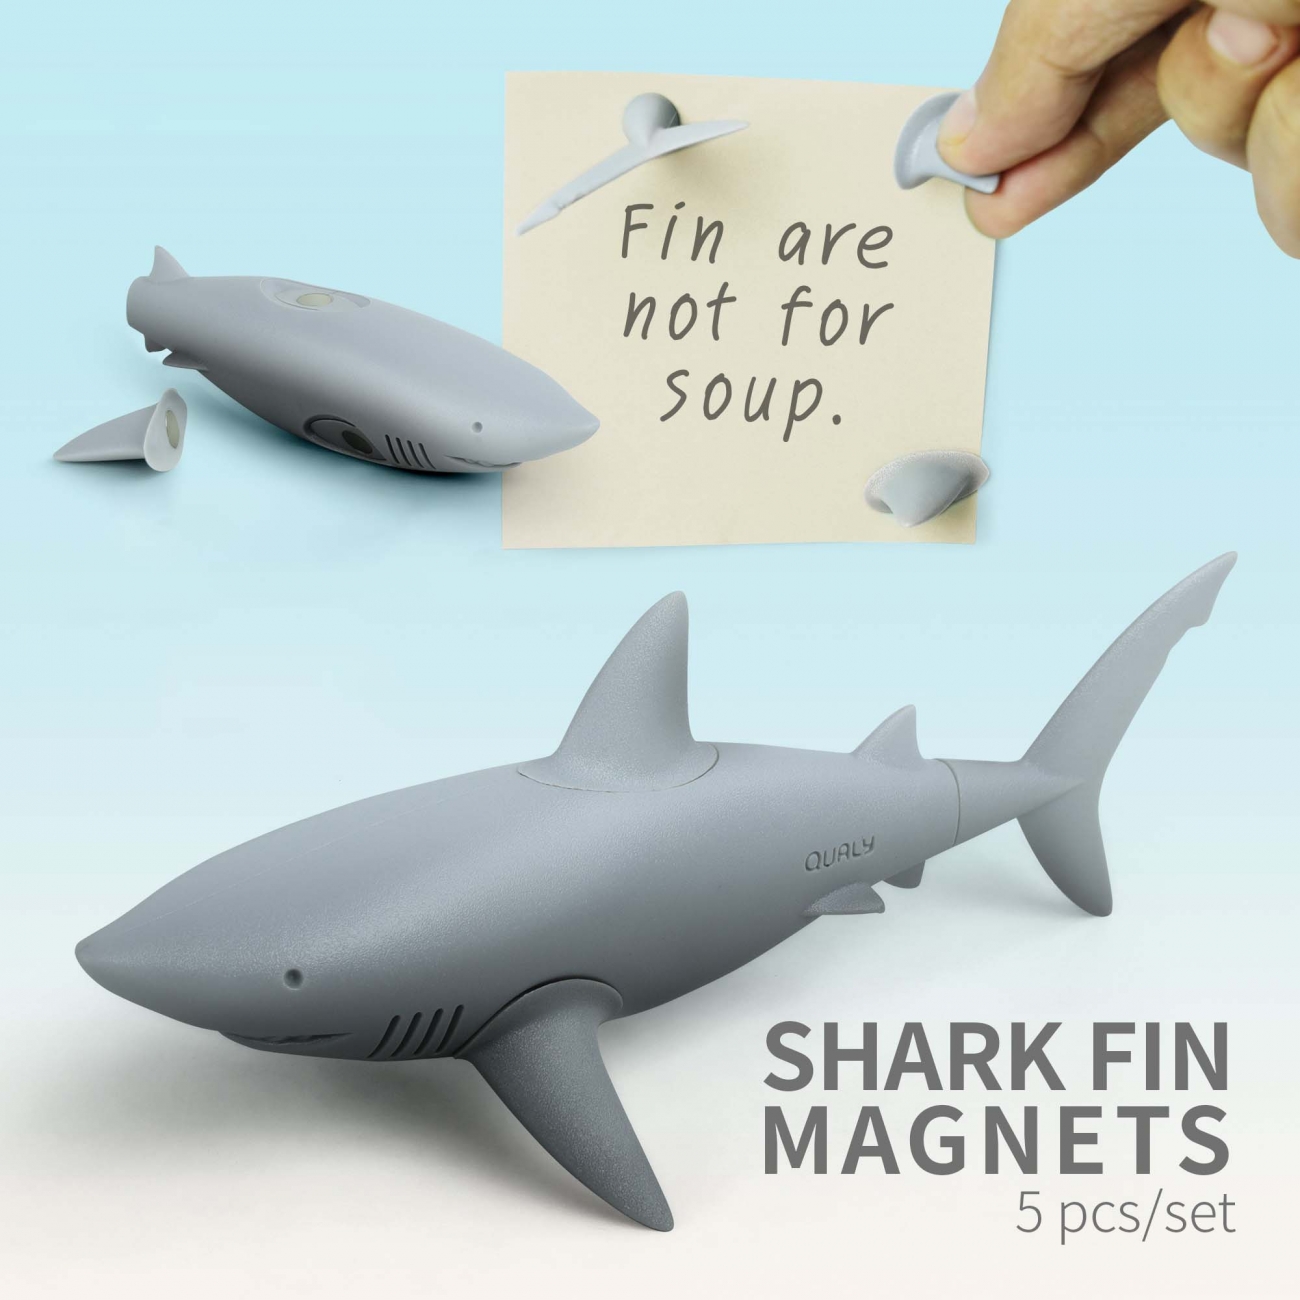 SHARK FIN MAGNETS